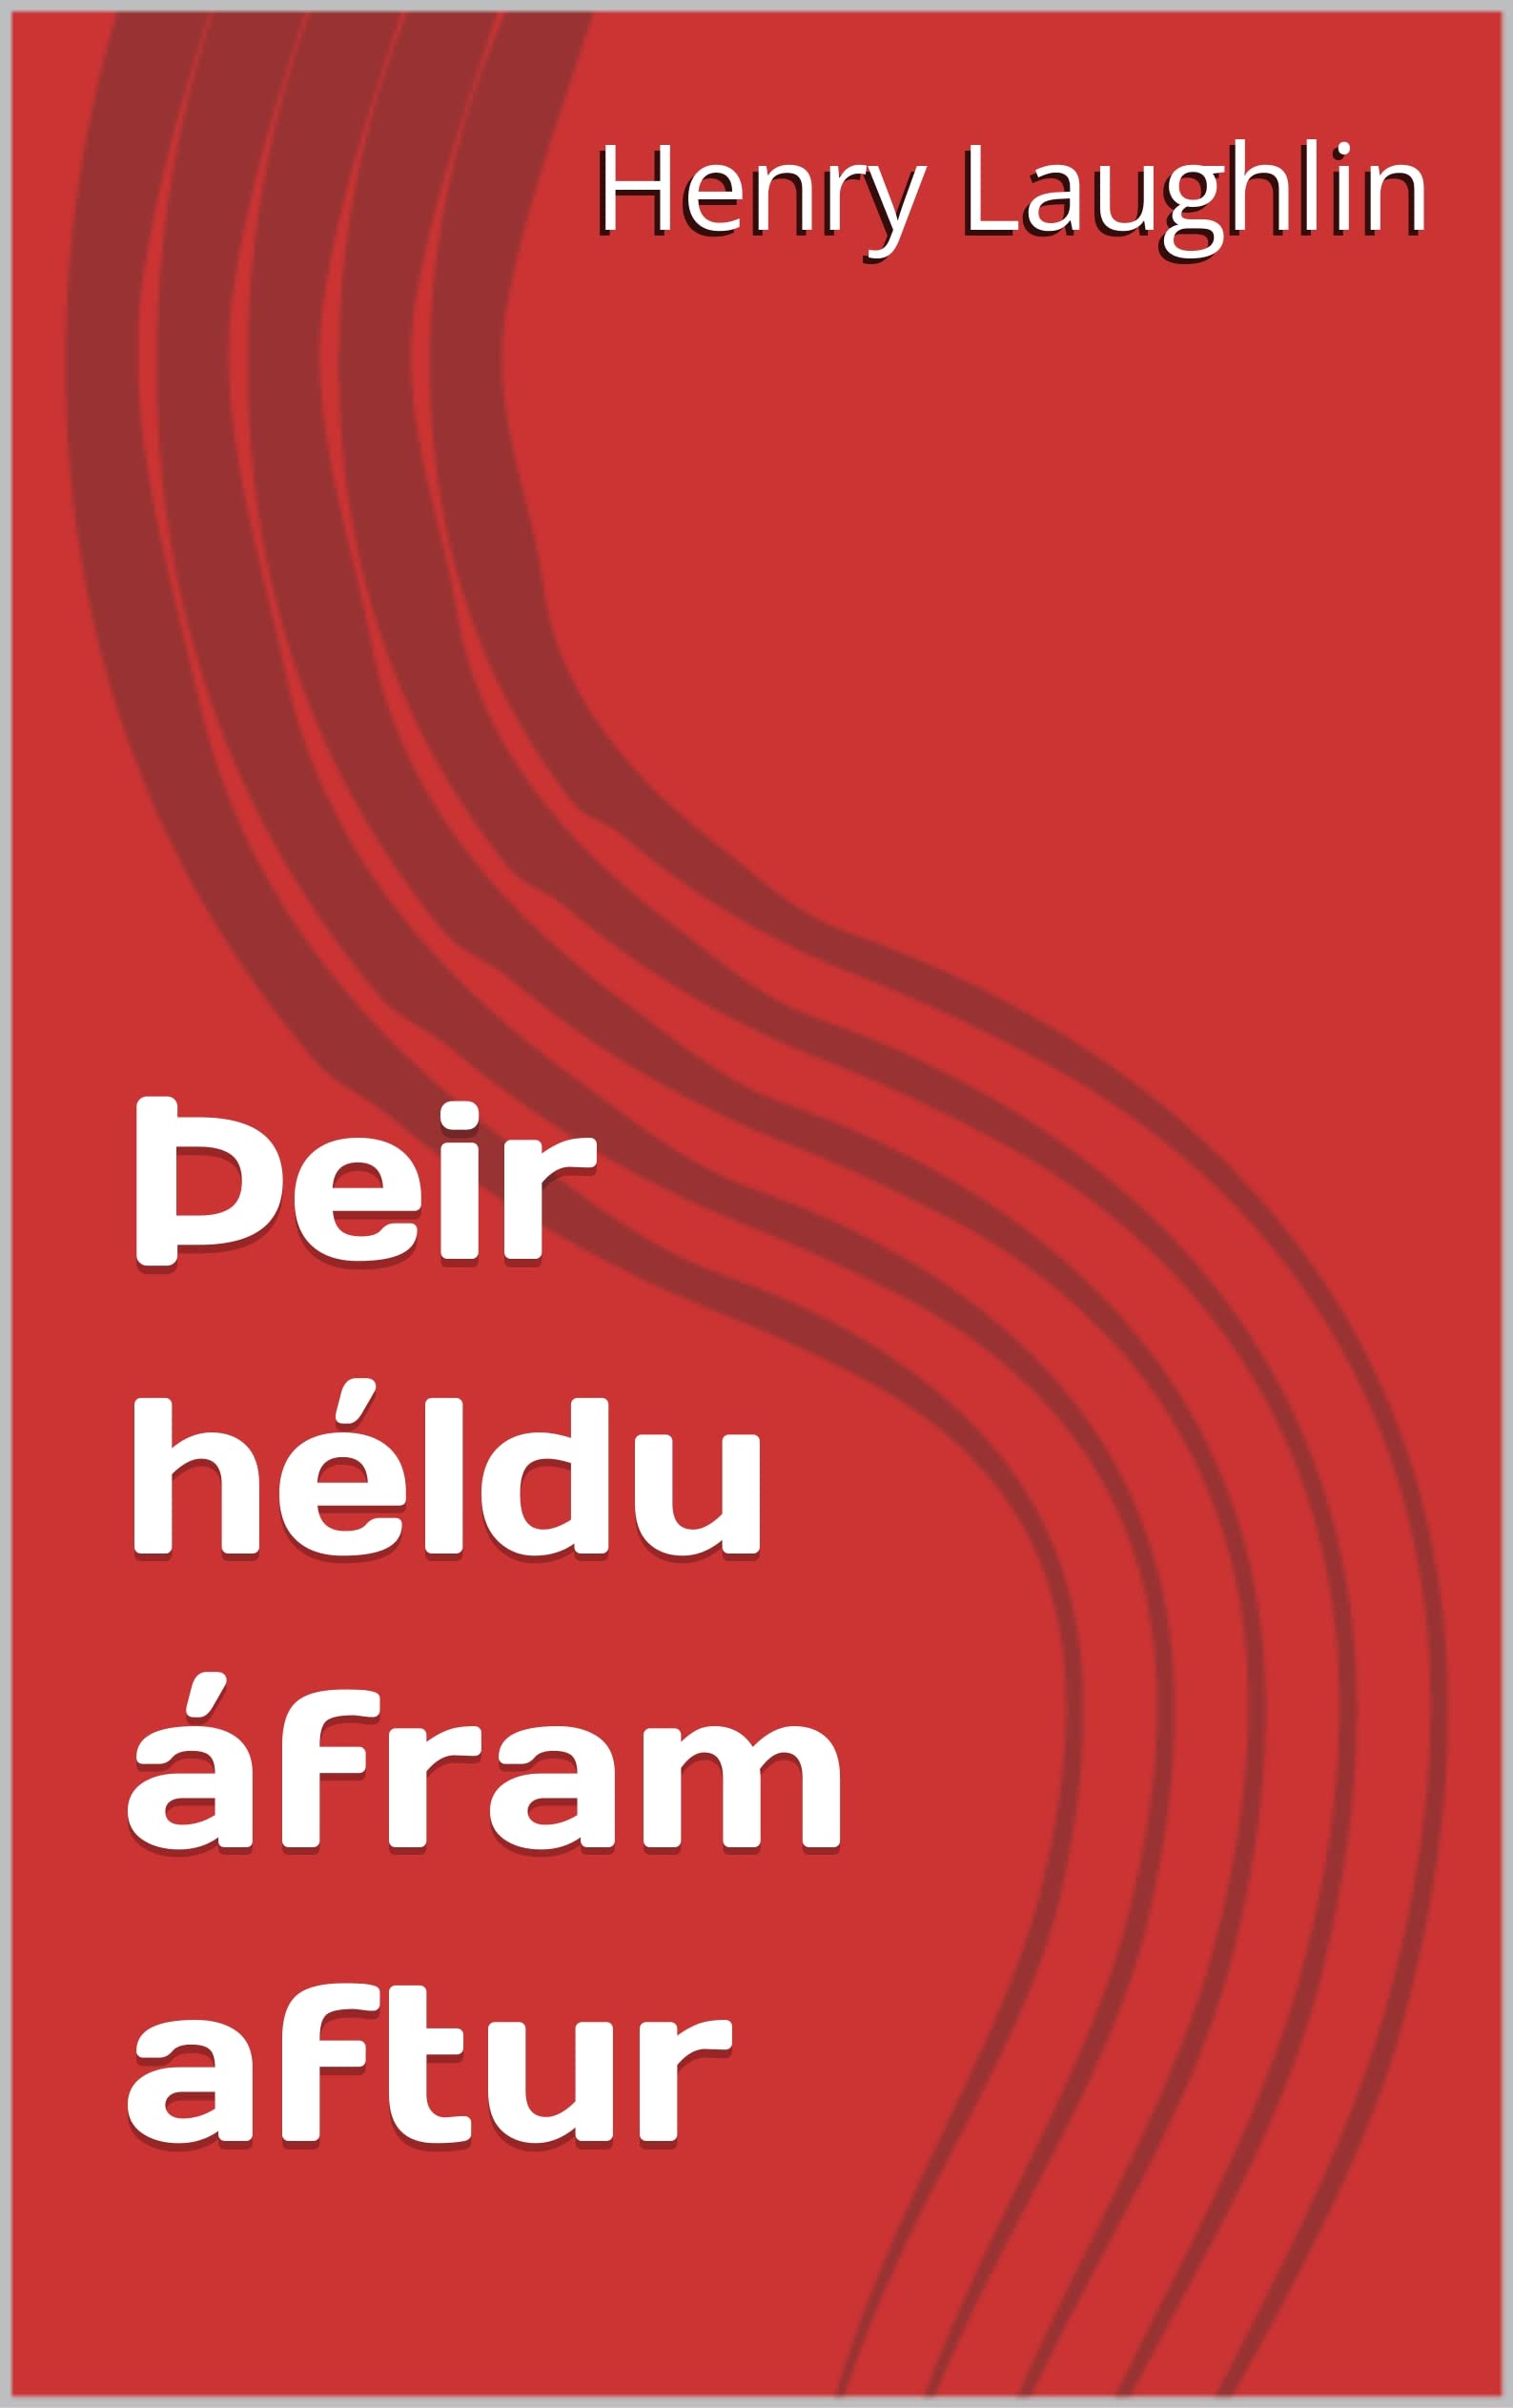 Þeir héldu áfram aftur (Icelandic Edition)